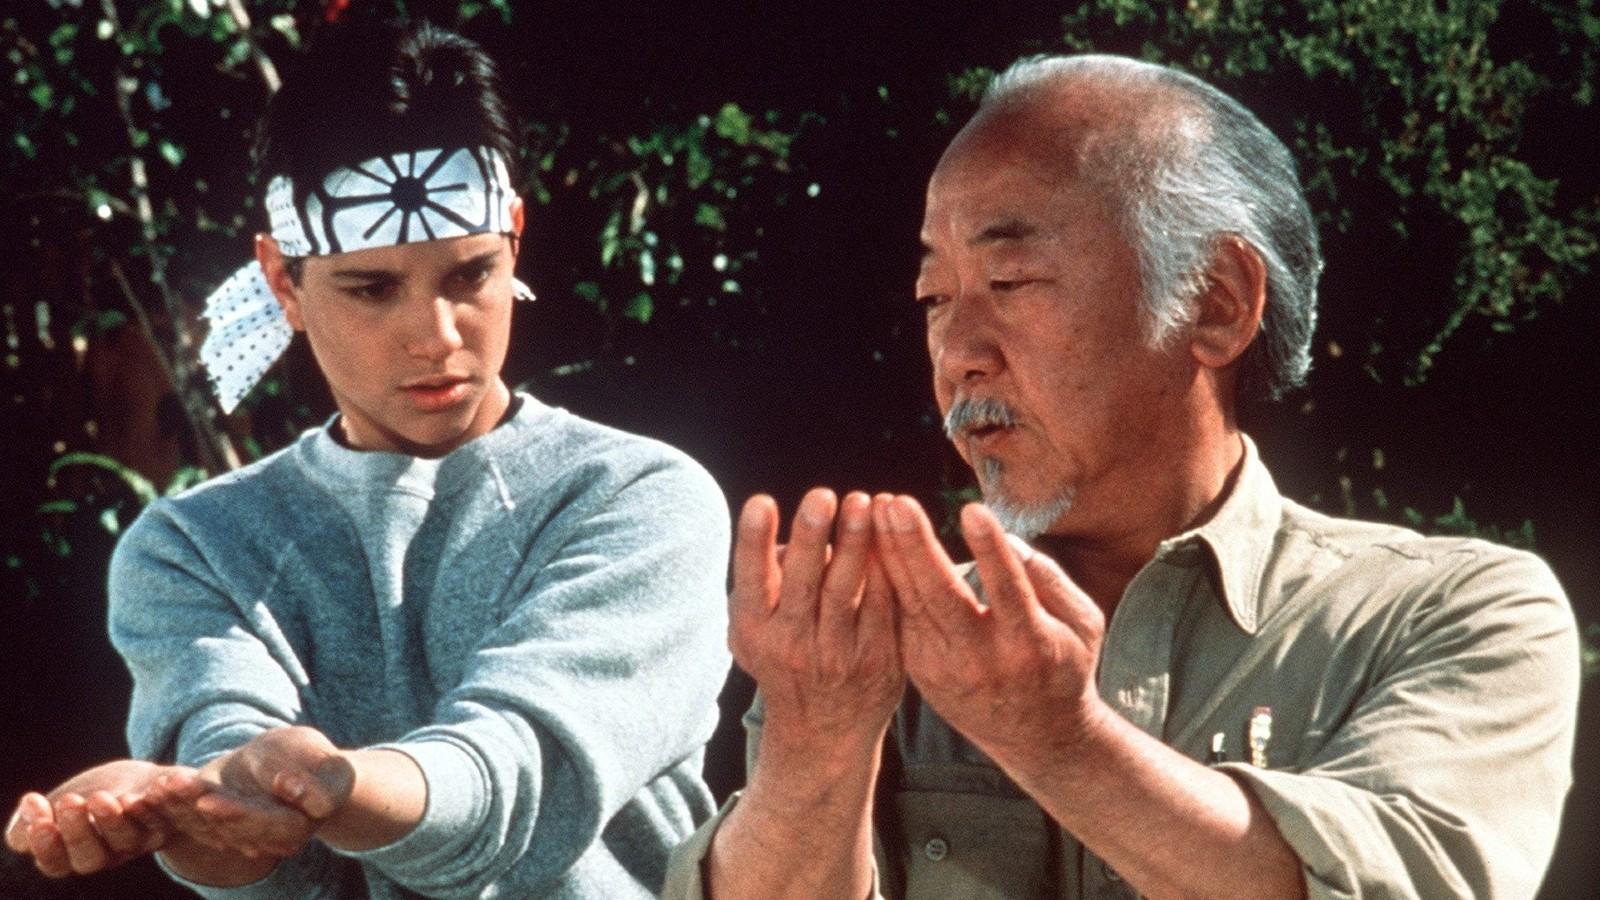 Mr. Miyagi training Daniel in The Karate Kid.